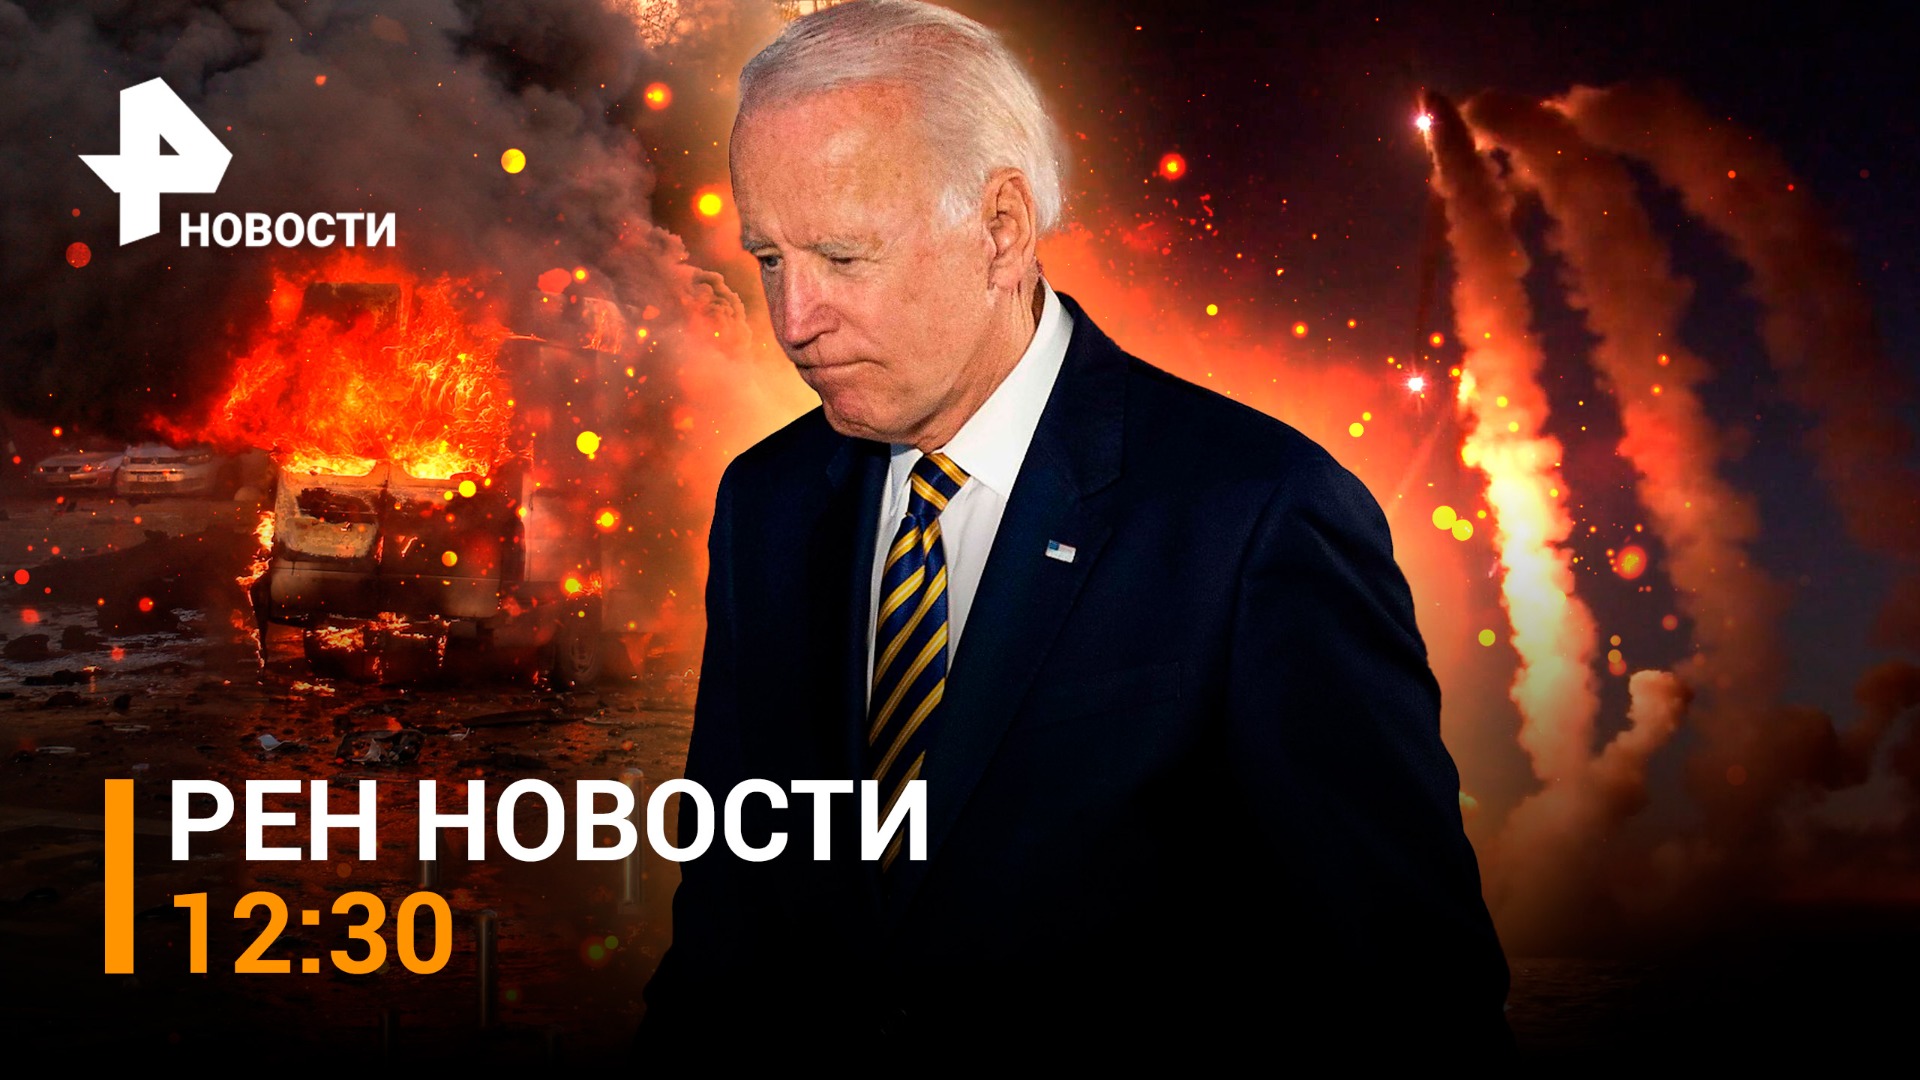 Треть энергостистемы Украины - все. ФСБ предотвратила теракты в РФ / РЕН НОВОСТИ 12:30 от 12.10.2022